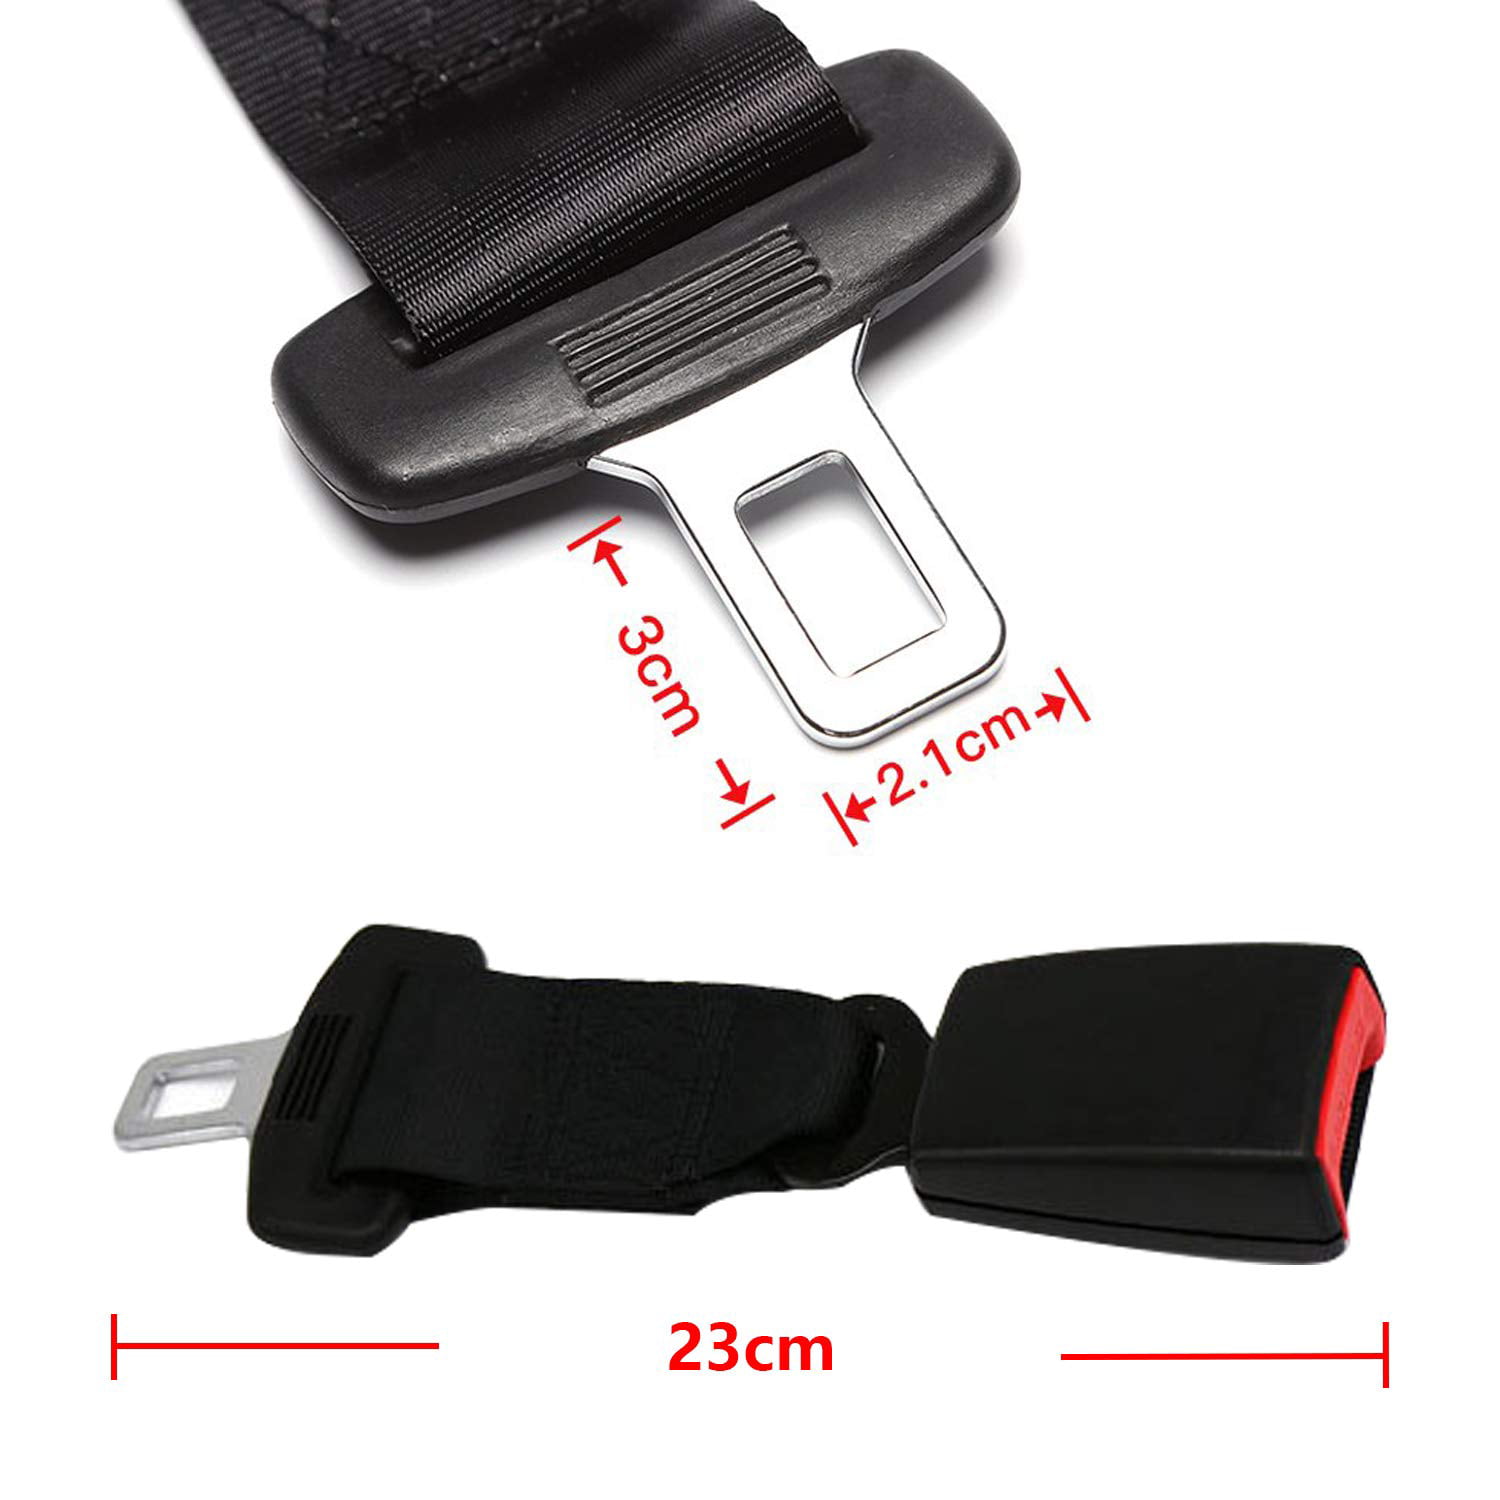 2 pcs 7/8" Seatbelt Buckle Car Seat Seatbelt Safety Extender Belt Extension Kit